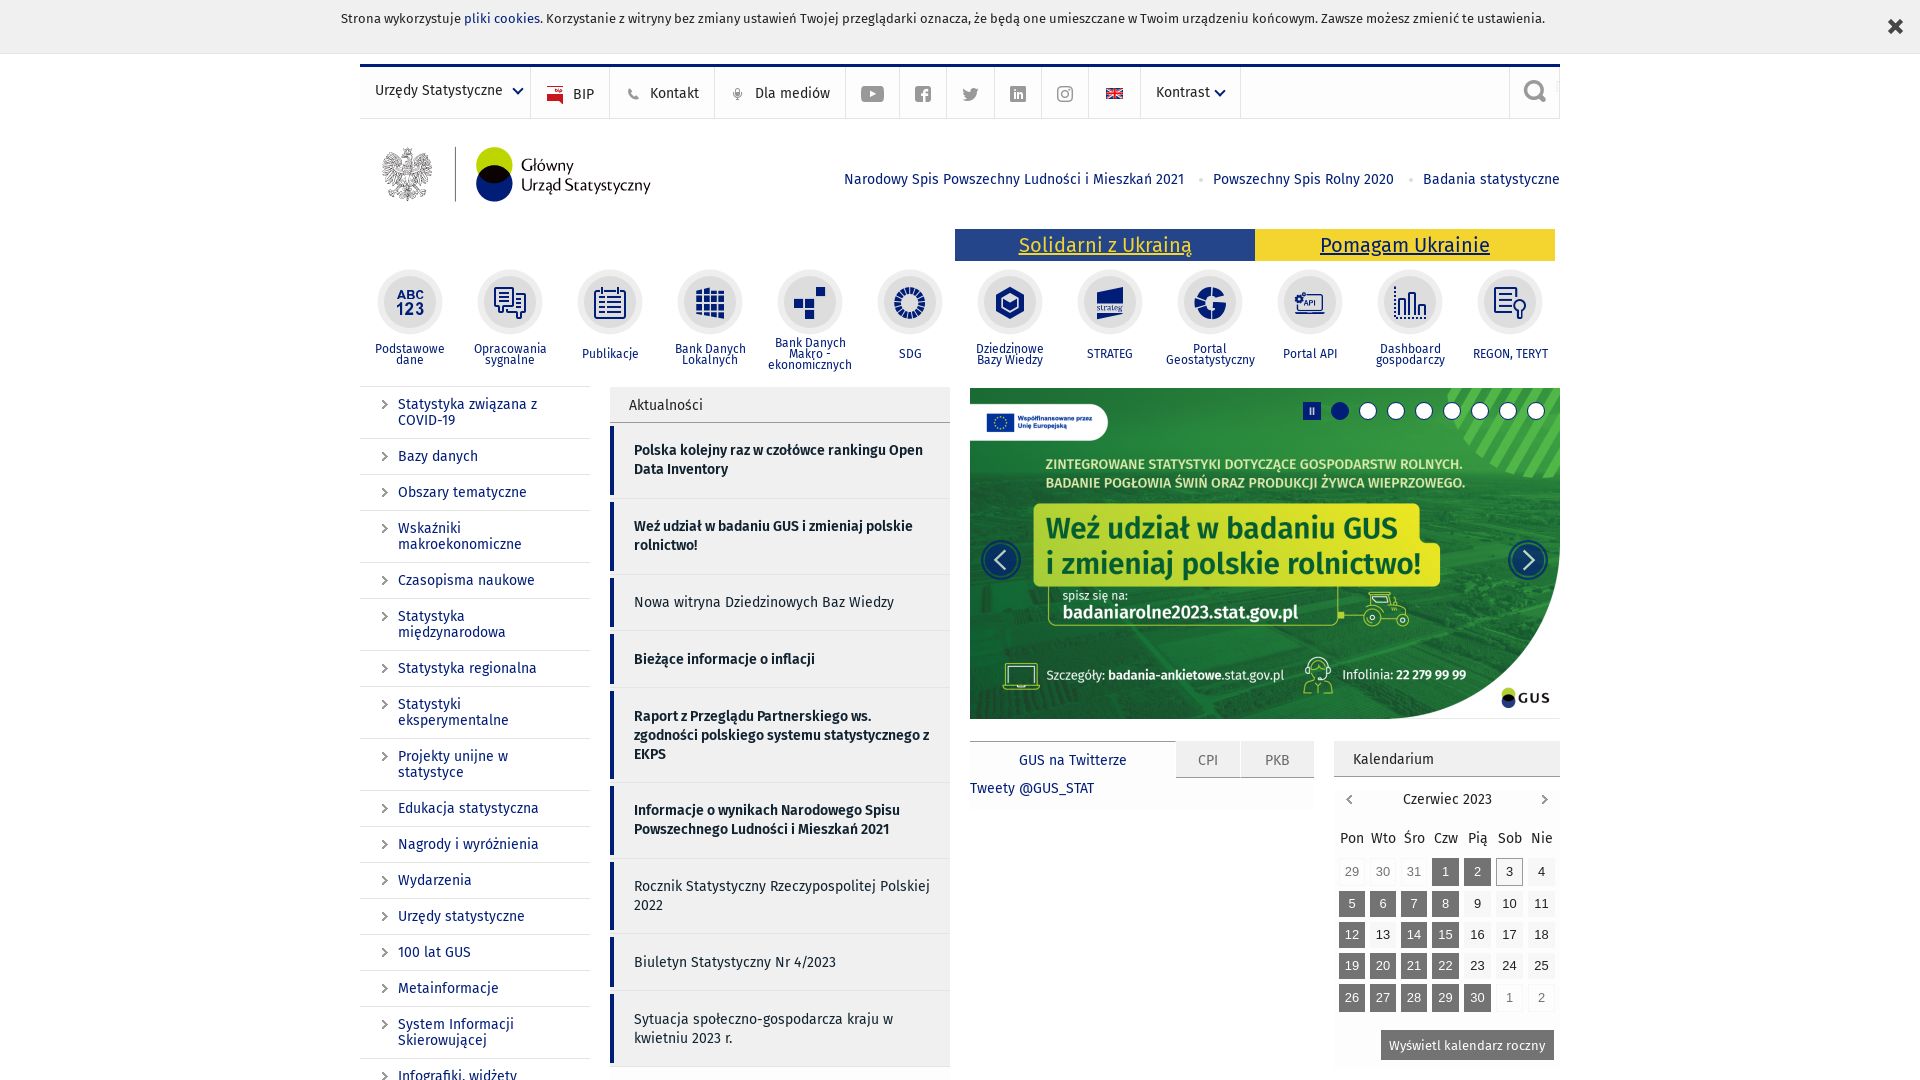 Website status stat.gov.pl is   ONLINE